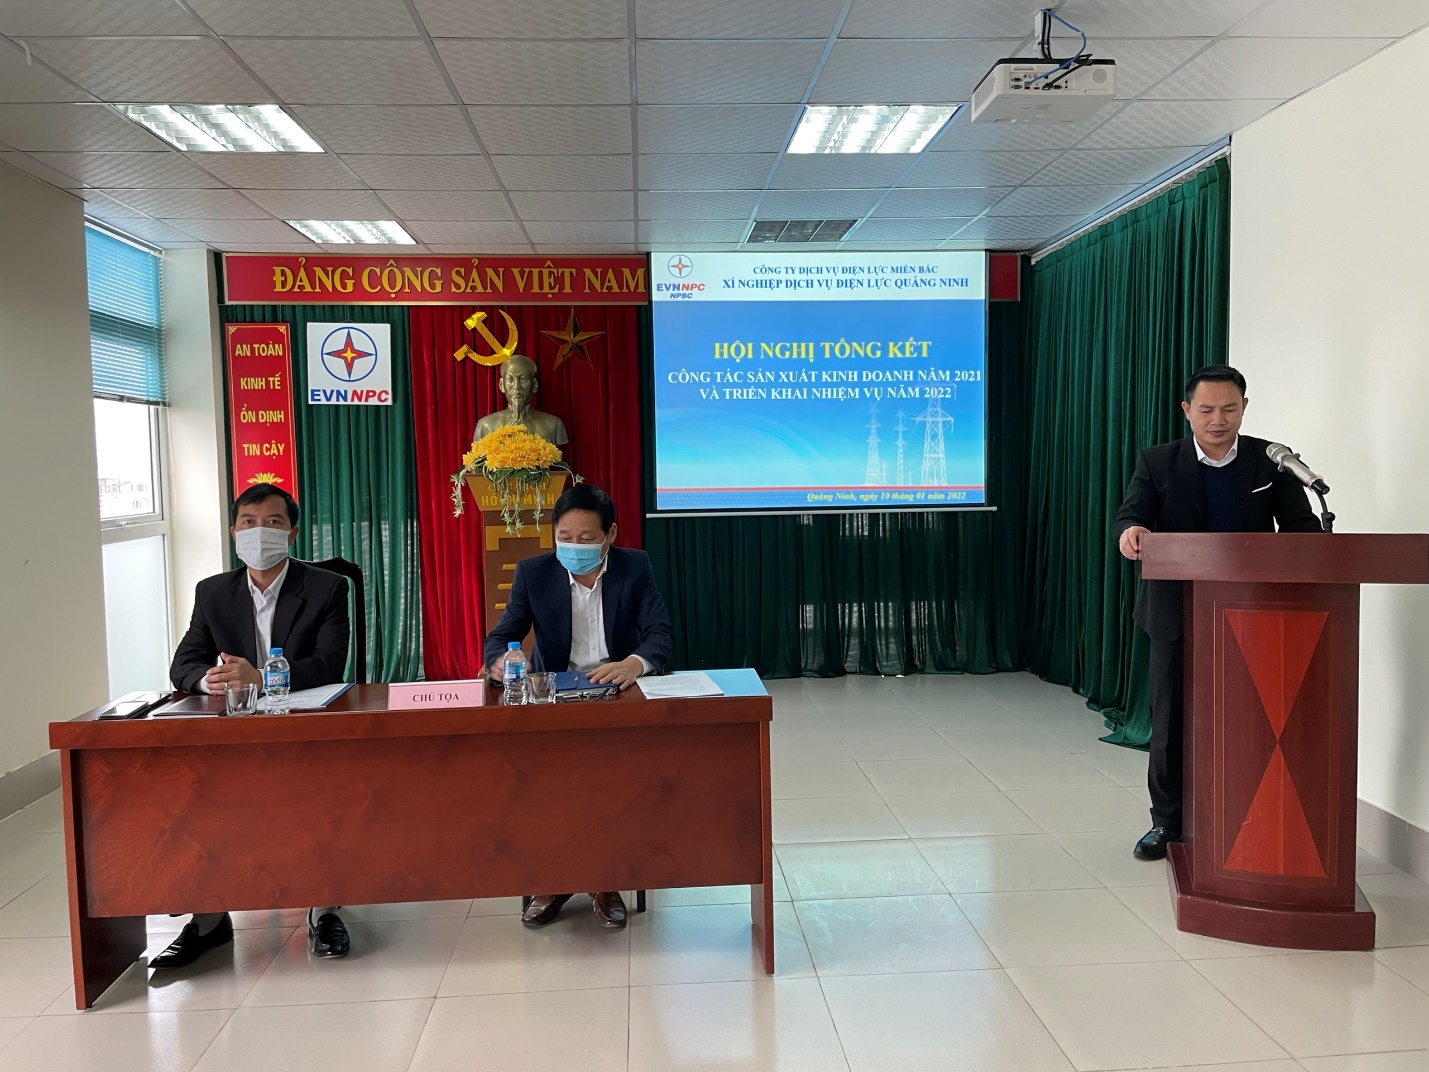 Xí nghiệp Dịch vụ Điện lực Quảng Ninh tổ chức hội nghị Tổng kết công tác SXKD và phương hướng nhiệm vụ năm 2022.